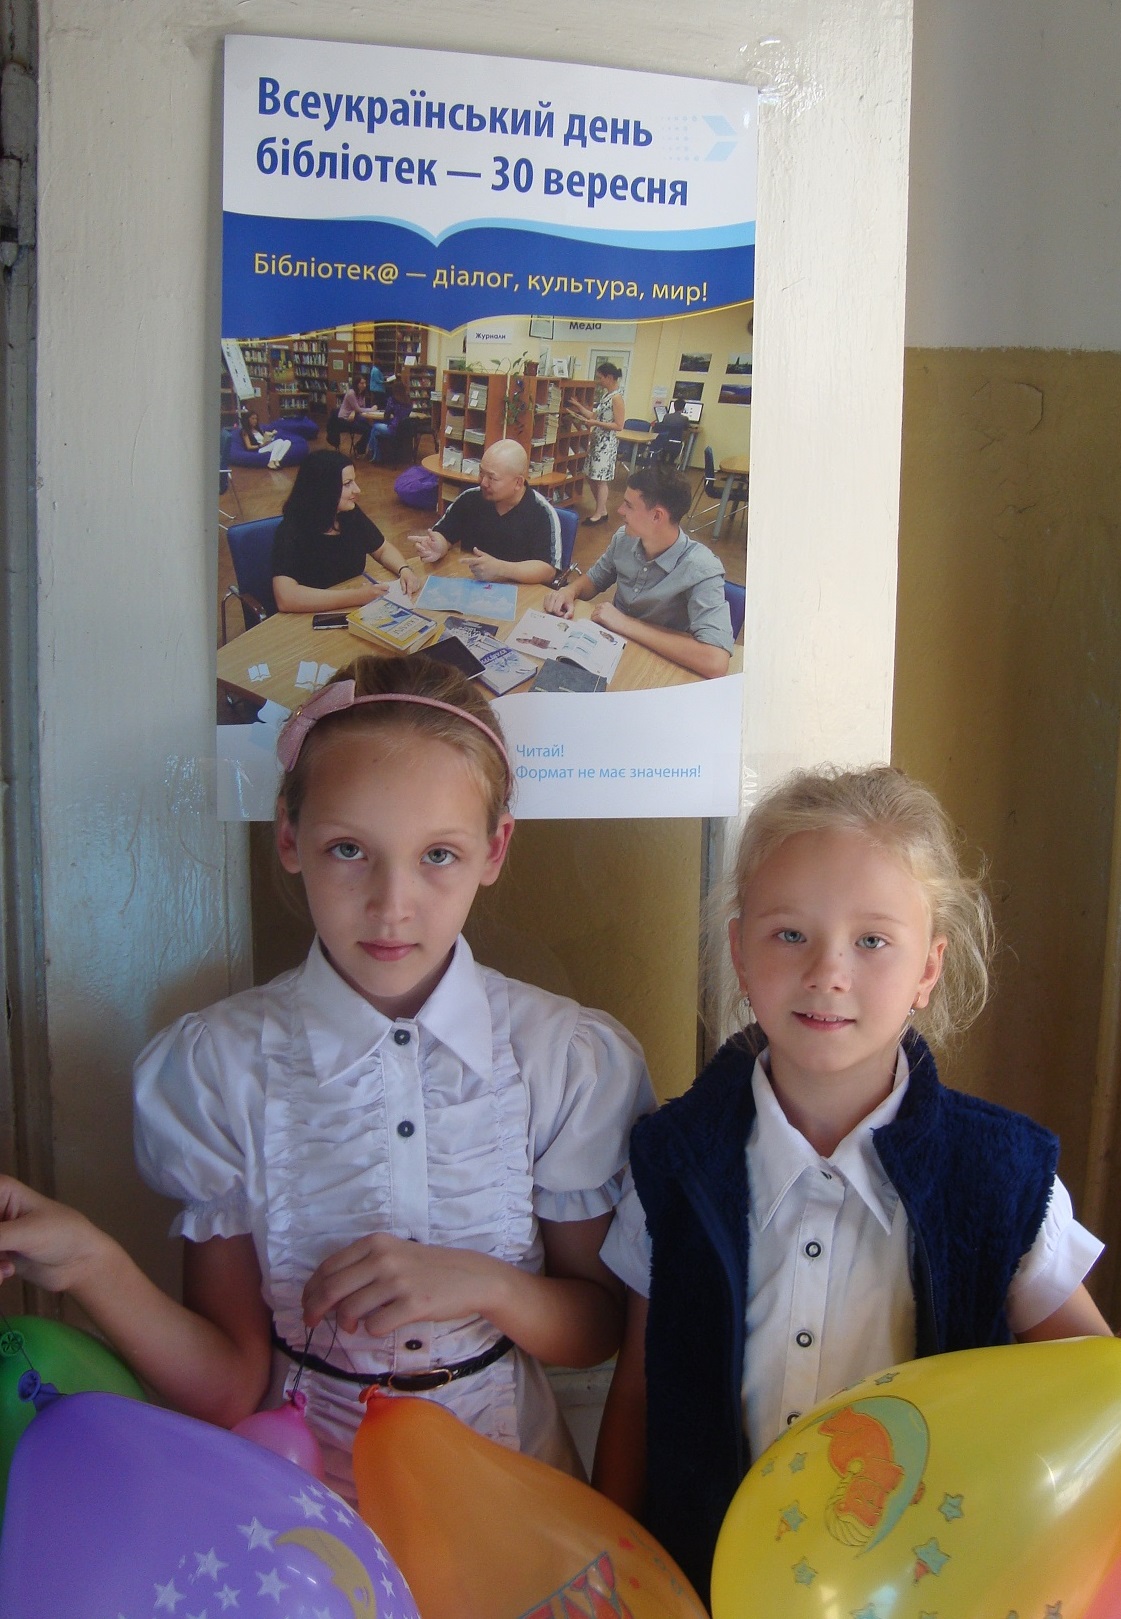 «Всеукраинский день библиотек» участники акции Плейчук Анастасия, Антипова Дарья - ученики 3-Акласса СШ №129